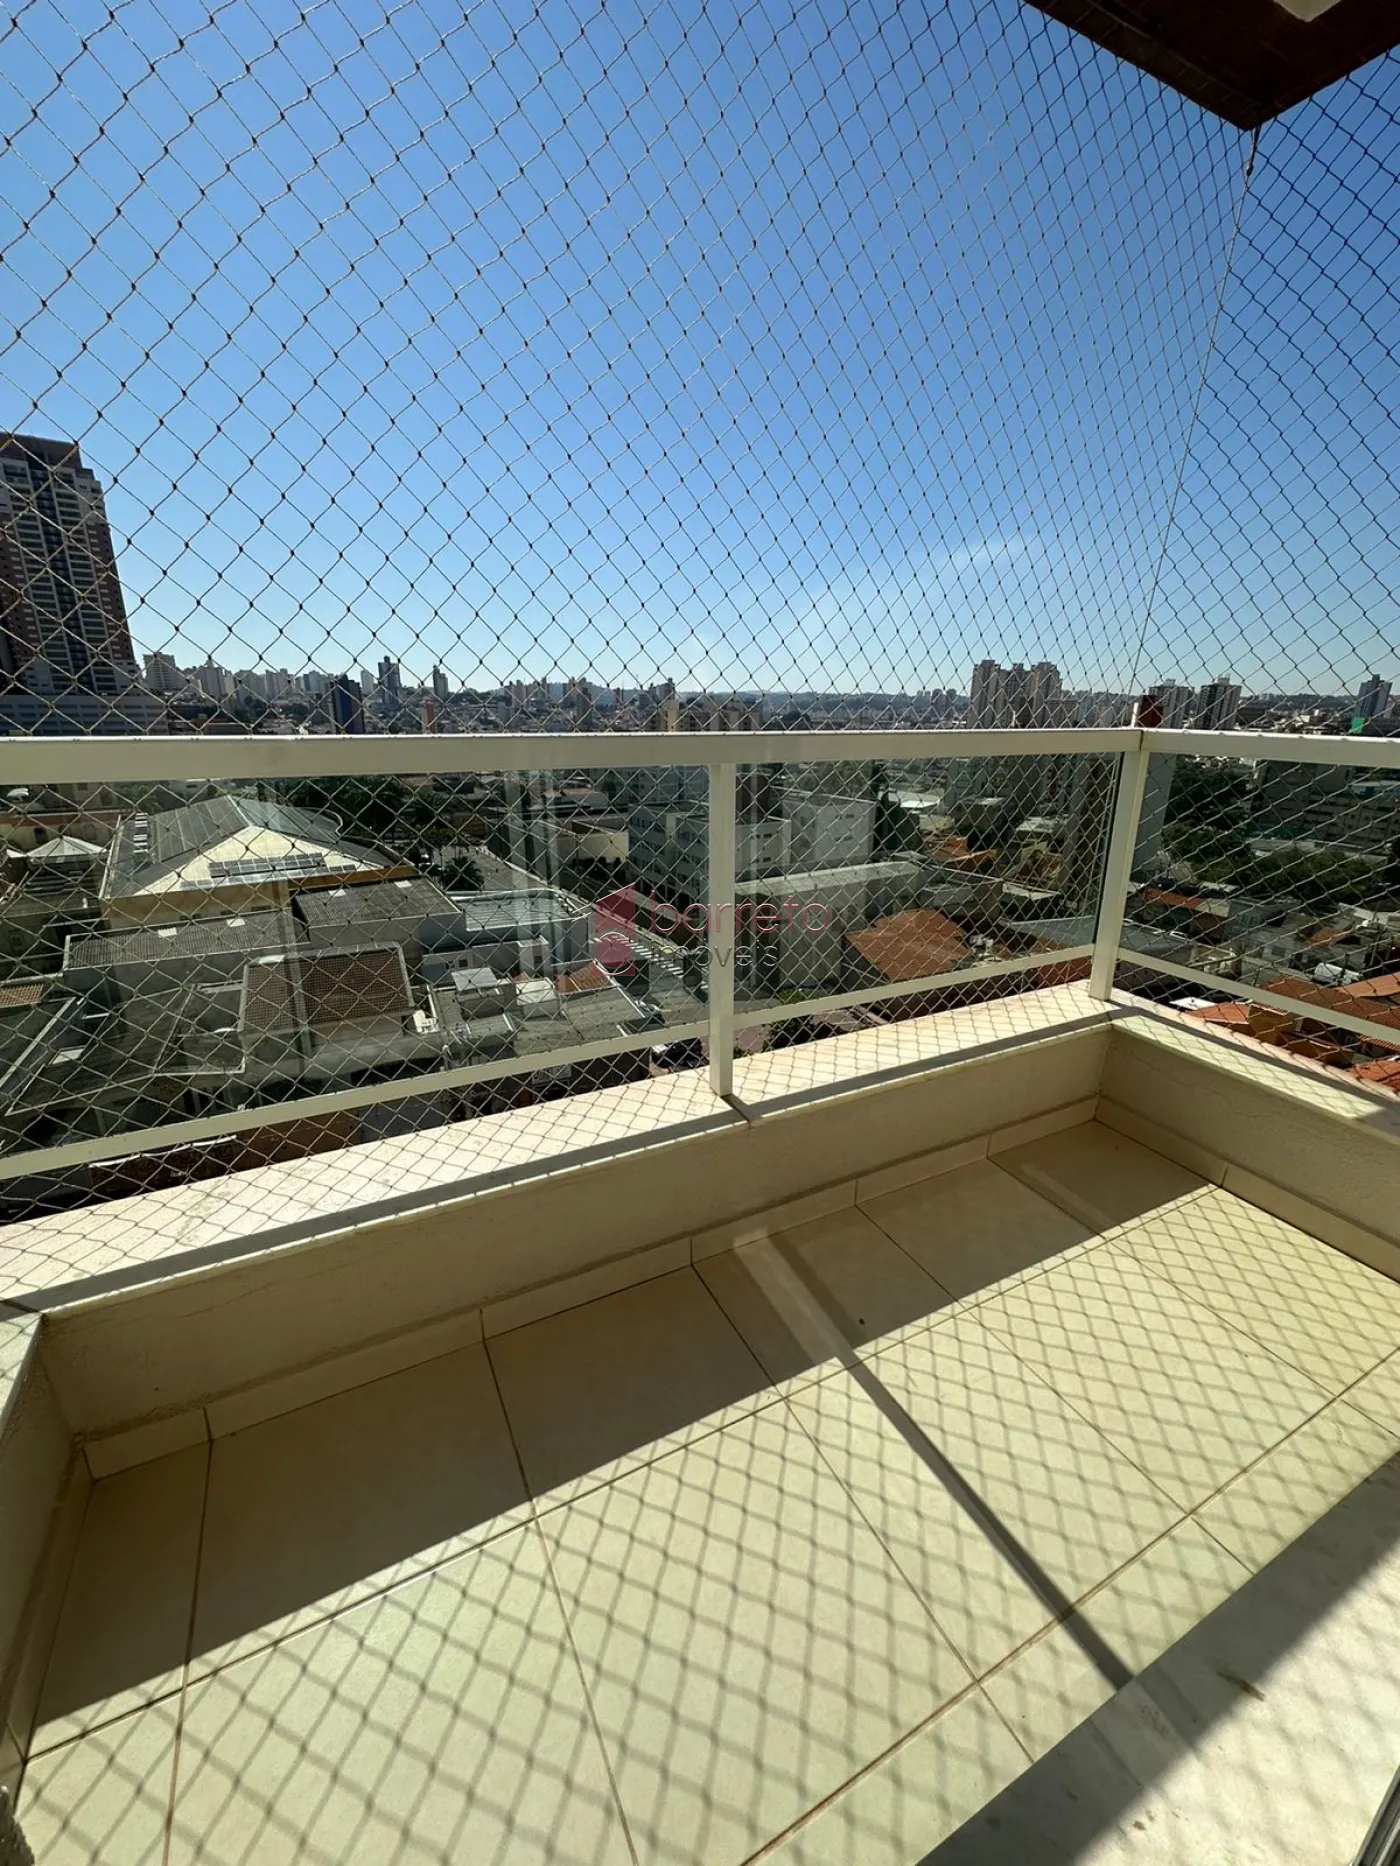 Alugar Apartamento / Padrão em Jundiaí R$ 2.600,00 - Foto 2